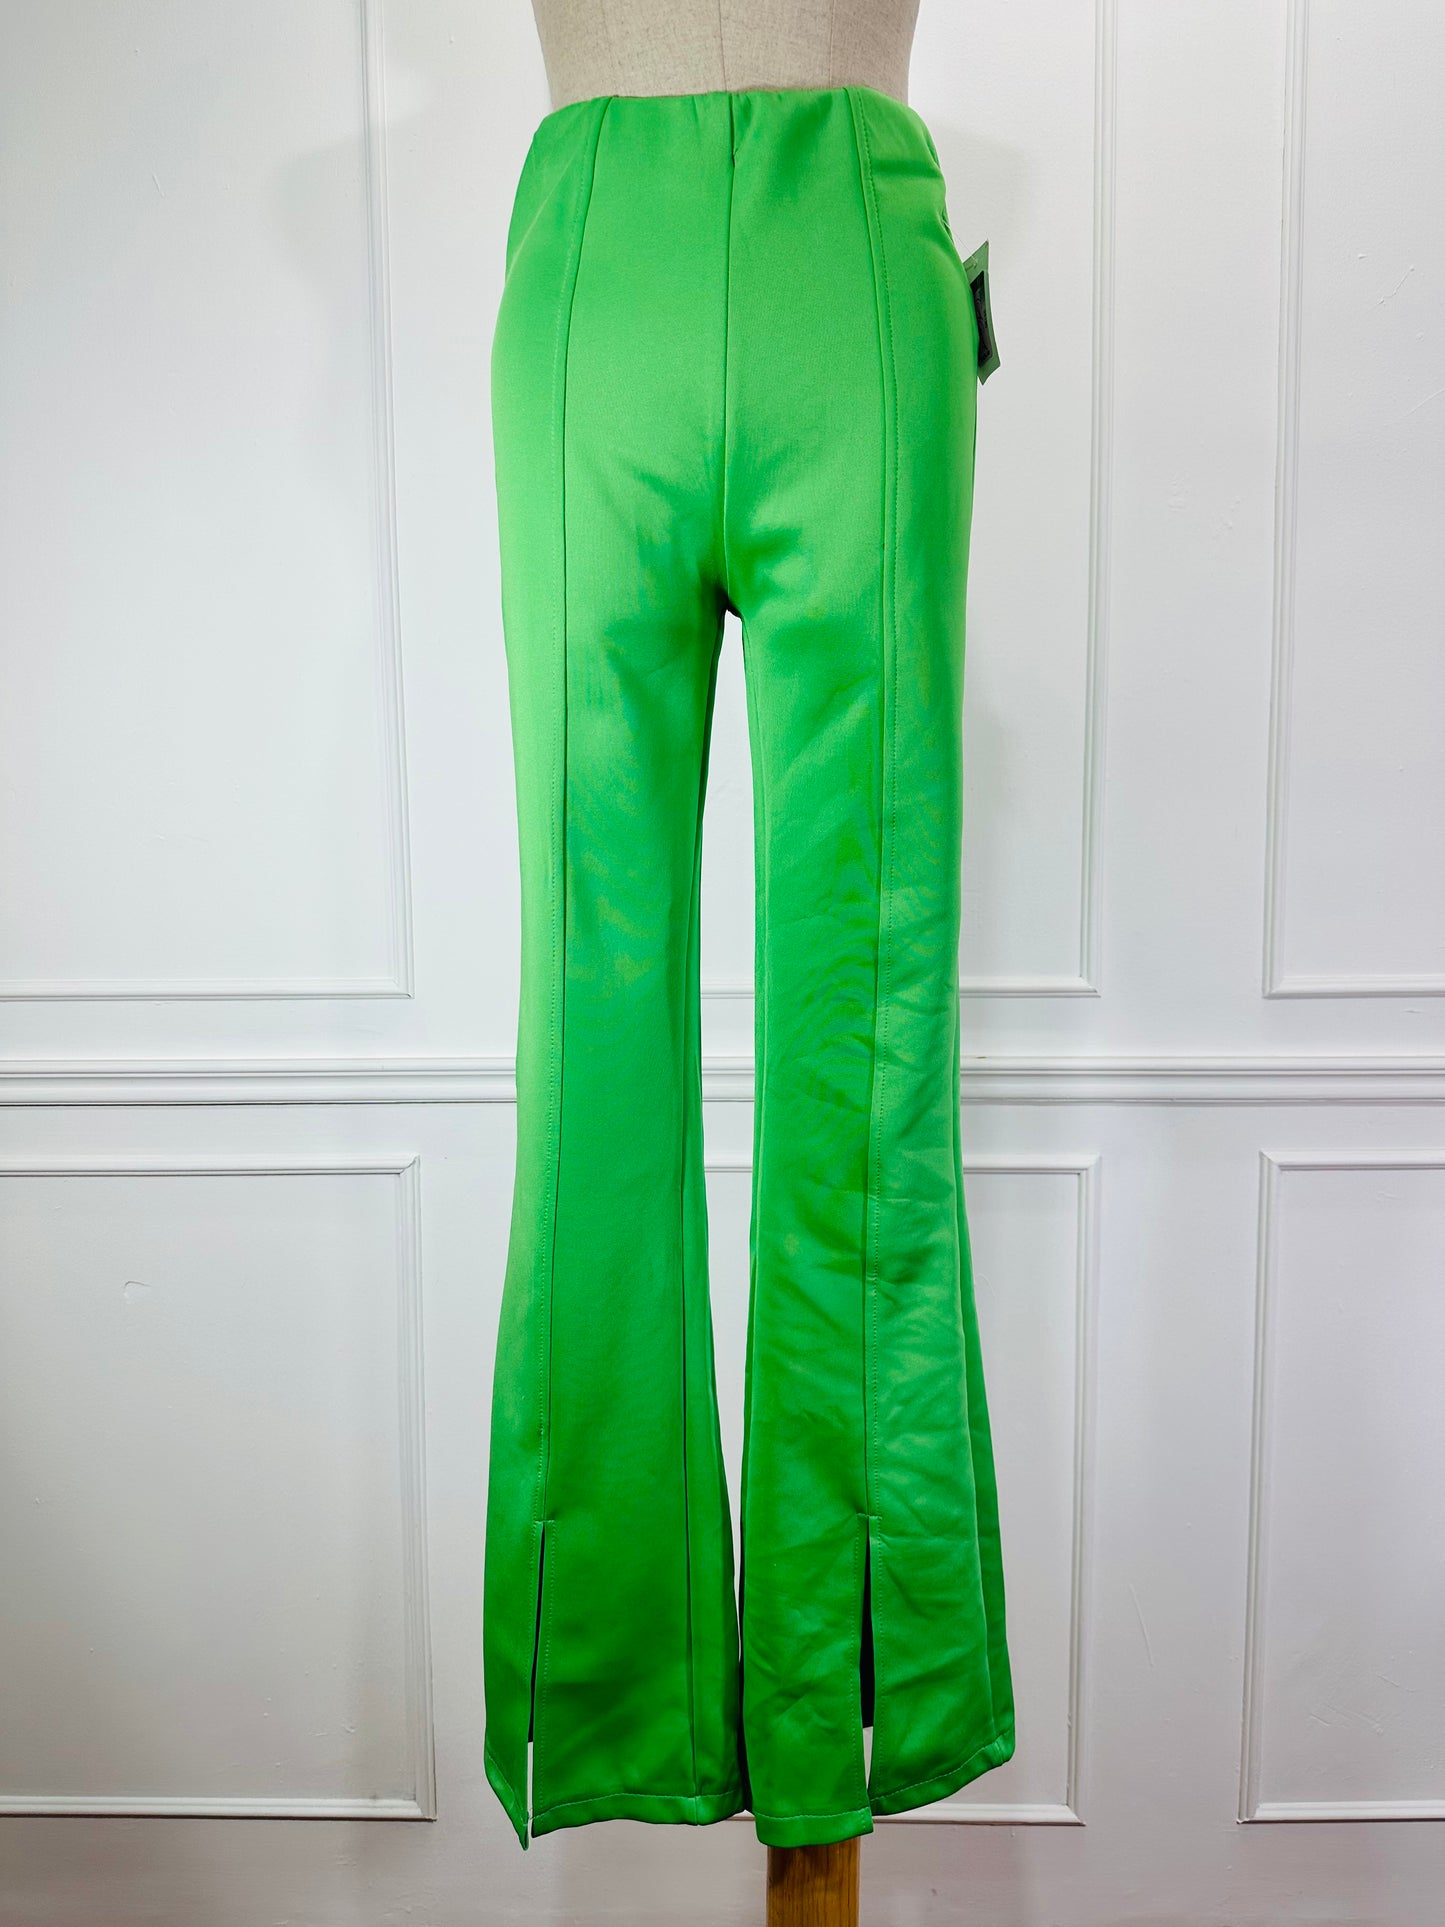 Pantalón terciopelo campana Colores Ana´s verde manzana